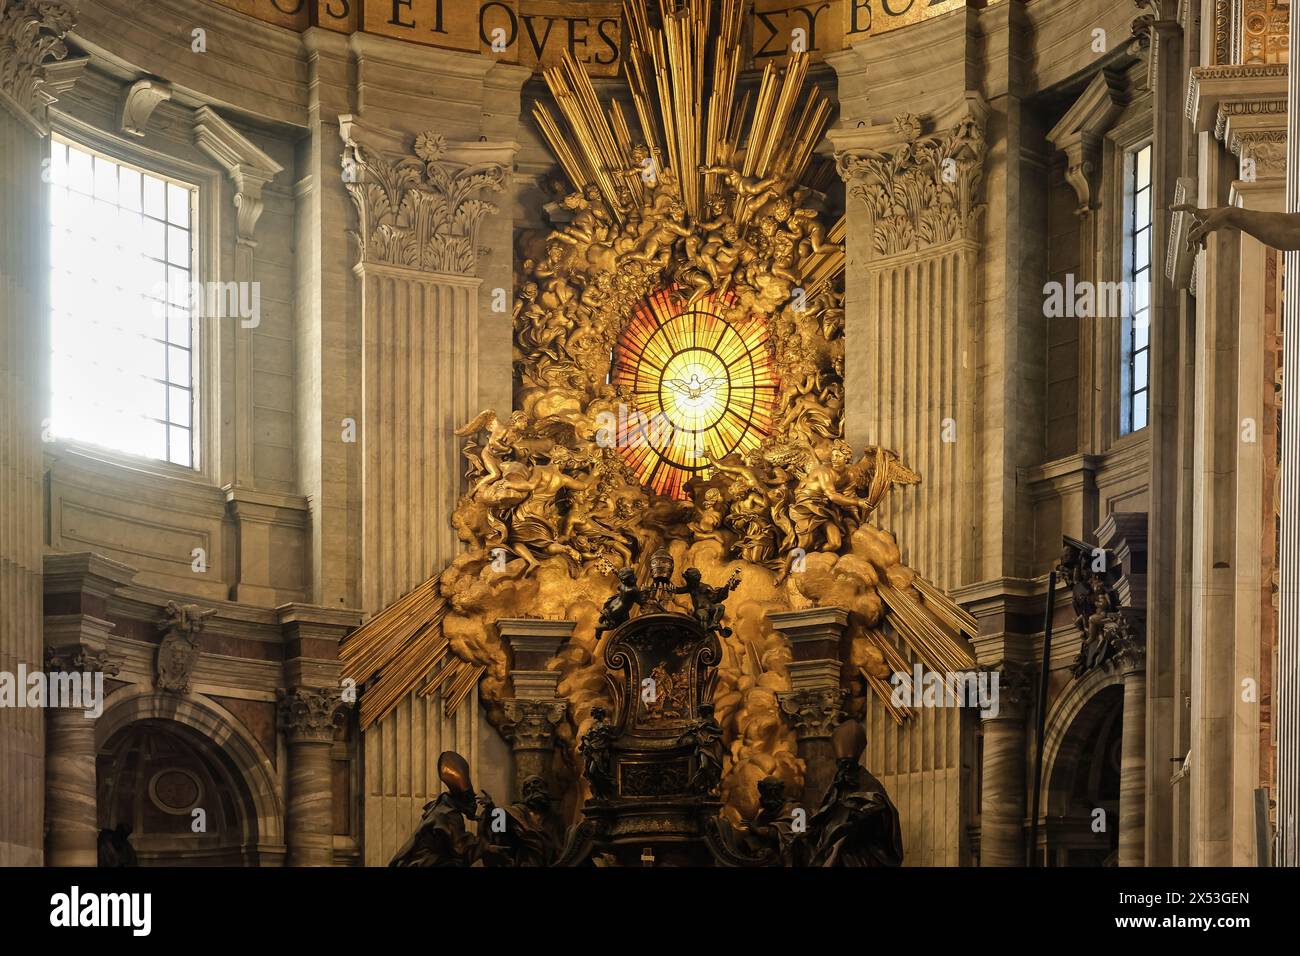 Particolare dell'altare della Cattedra di San Pietro, situato all'interno della Basilica di San Pietro nella città del Vaticano, l'enclave papale di Roma. Foto Stock